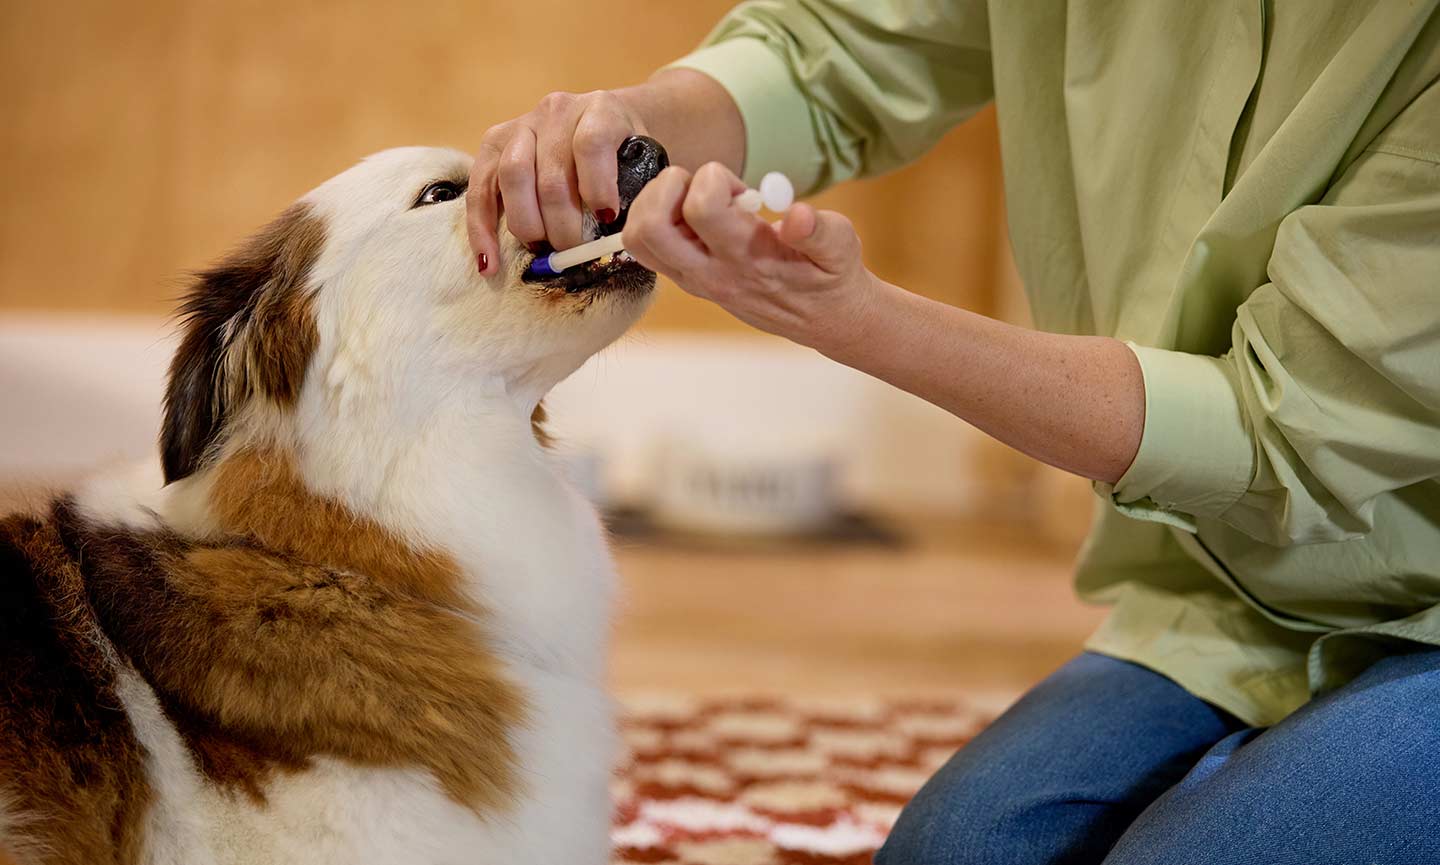 A woman giving a dog a pill using a pet piller